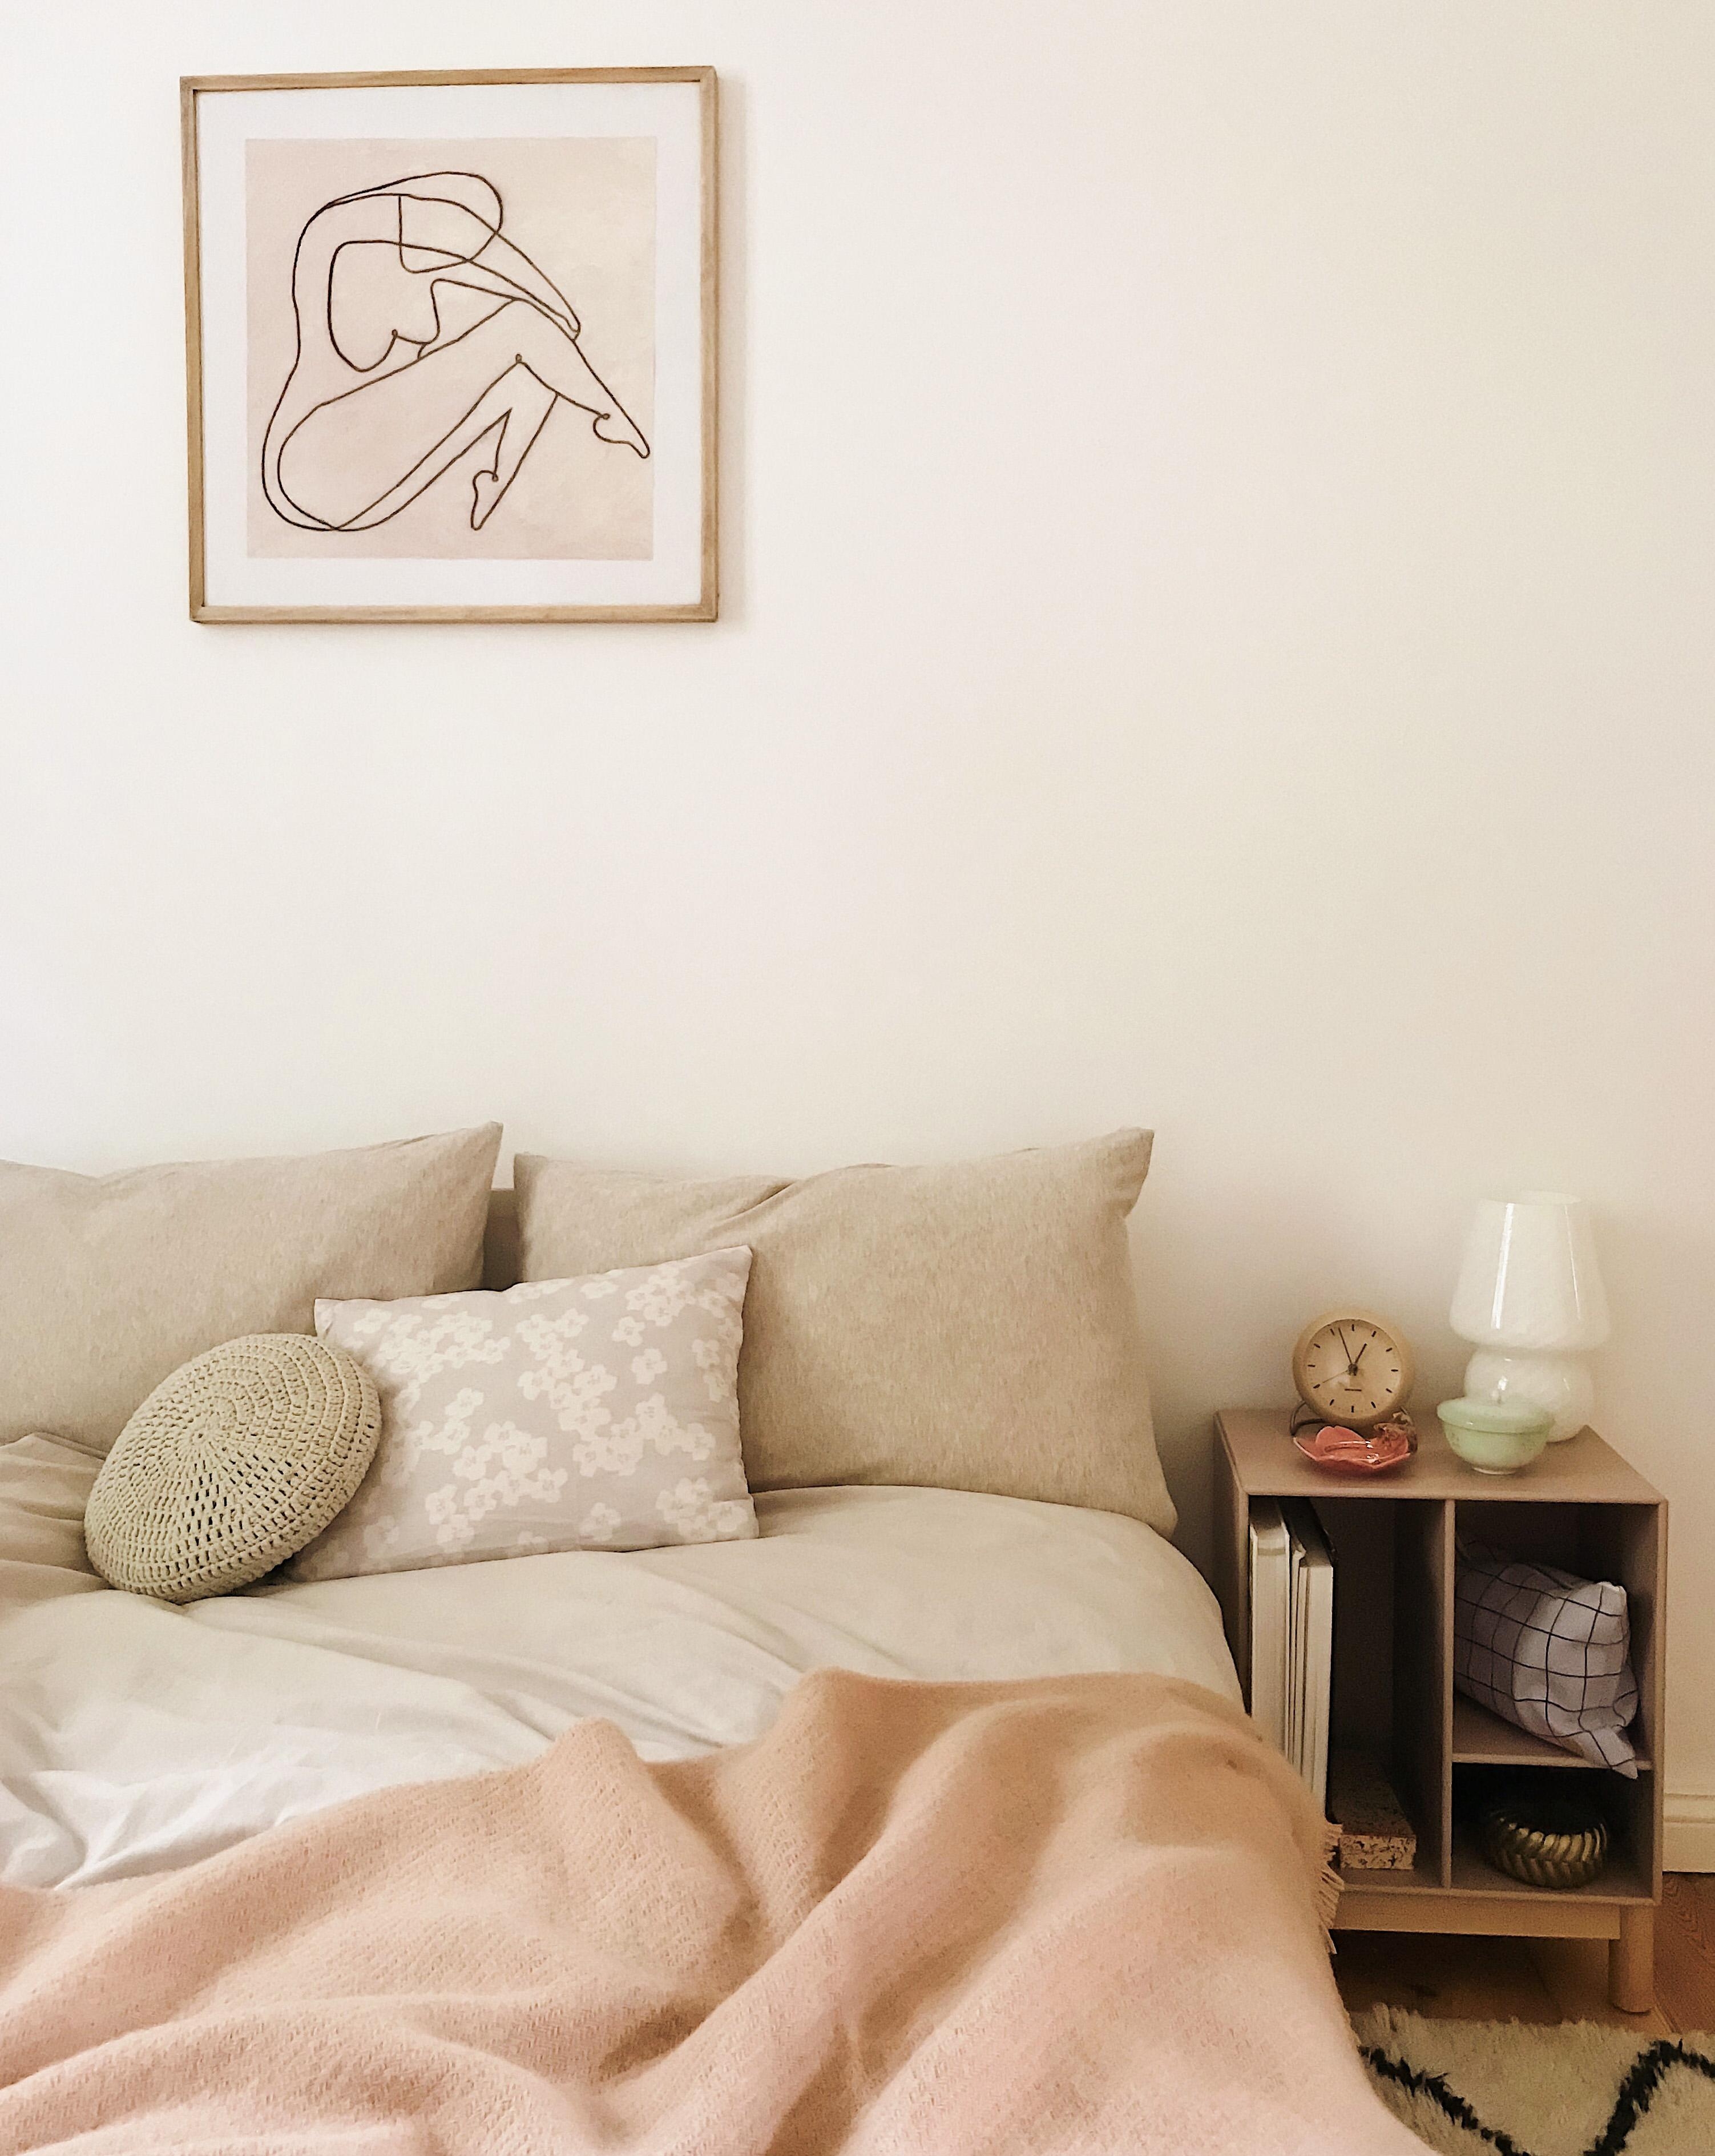 Es geht doch nichts über ein kühles Schlafzimmer bei diesen Temperaturen ☀️ #schlafzimmer #bedroom #couchstyle #heatwave